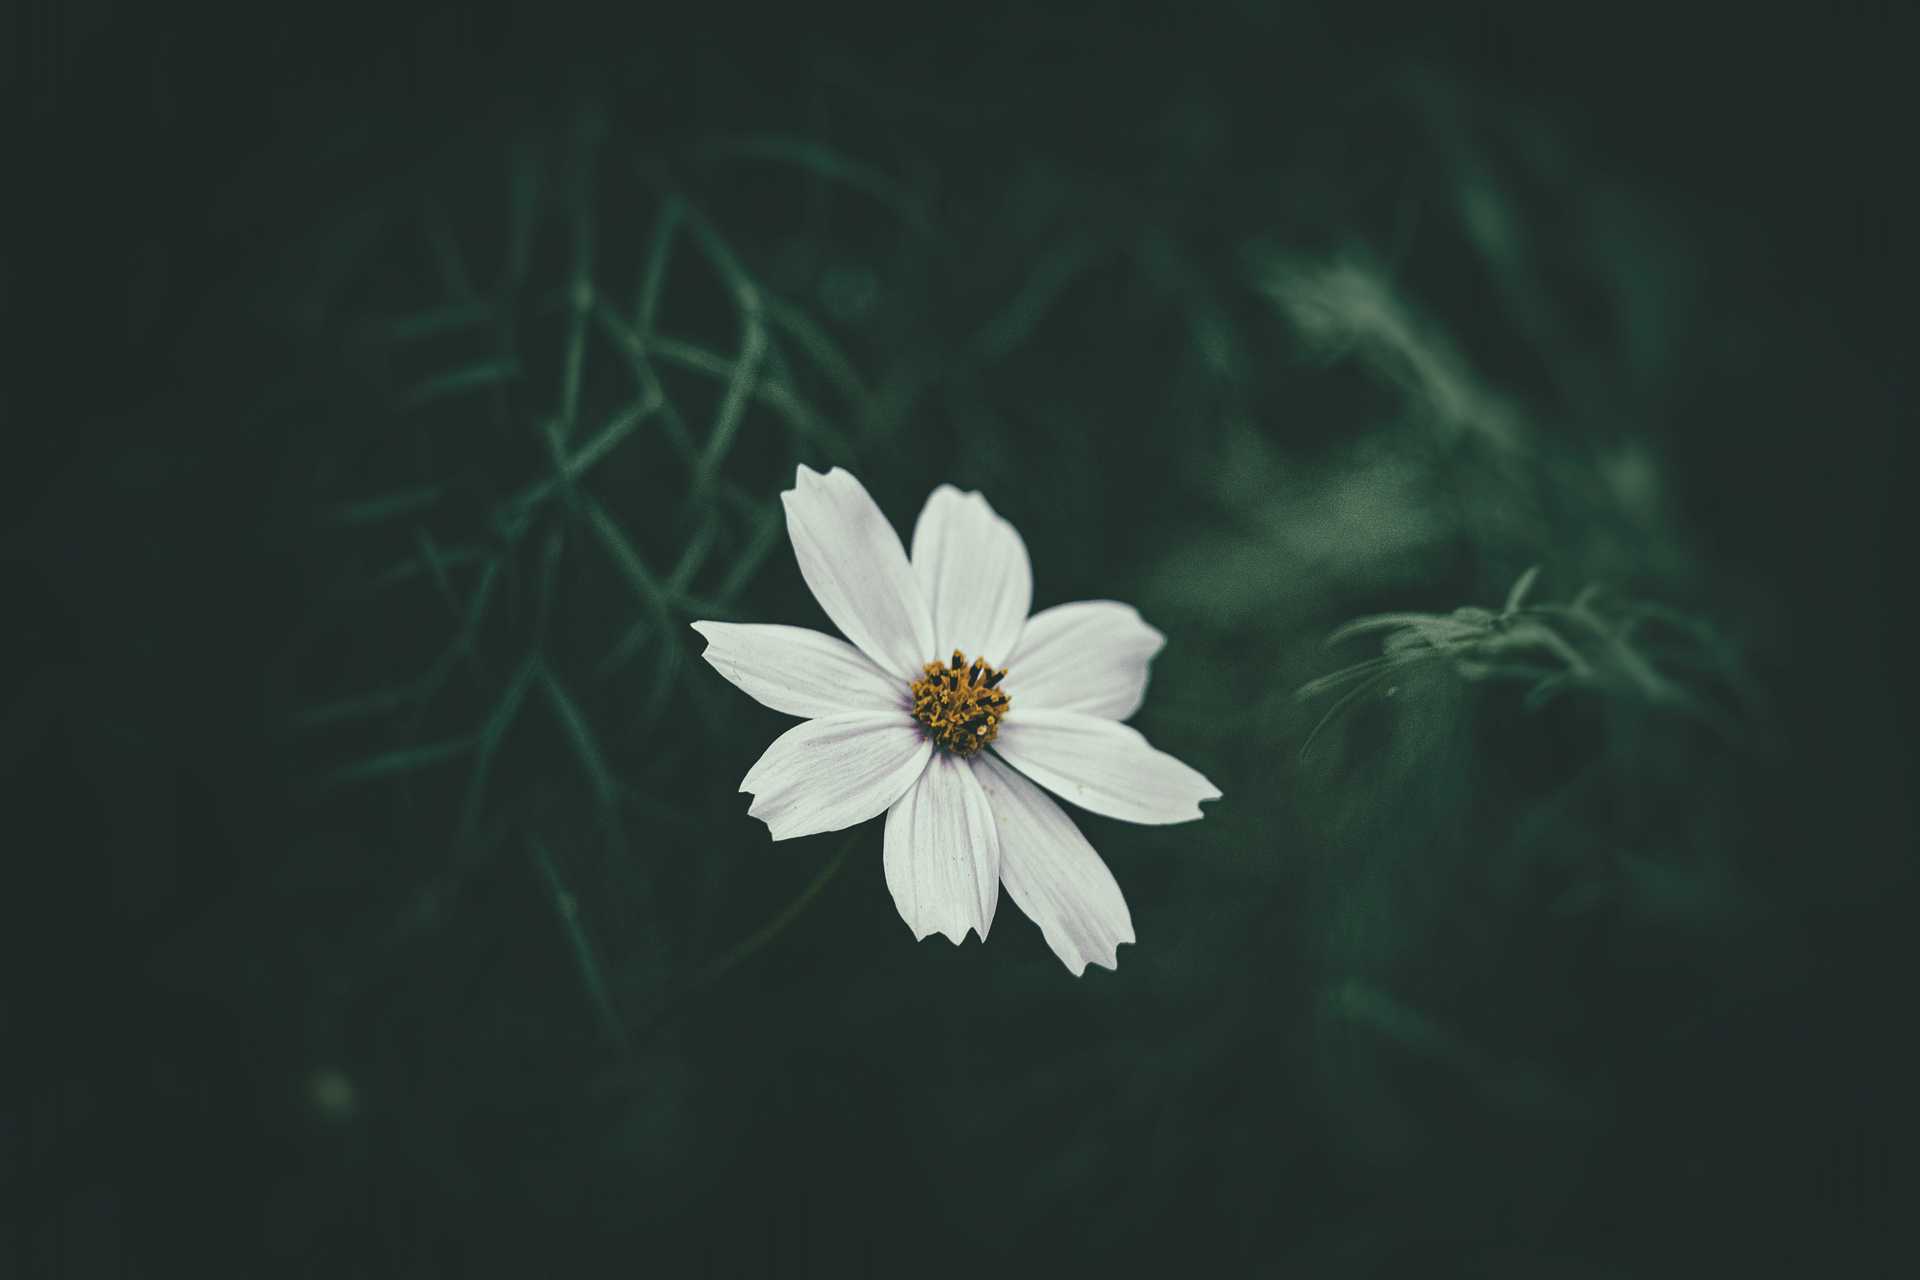 Ten uroczy obrazek przedstawia mały, biały kwiatuszek rosnący w pięknym, przydomowym ogrodzie. Kwiat ten ma delikatne płatki o kremowej barwie i małe, żółte środkowe części, które dodają mu uroku i elegancji. Widać na nim, że kwiat ten rośnie na niewielkim łóżku kwiatowym, otoczonym różnorodną roślinnością i kamieniami, co tworzy piękną, naturalną kompozycję. Ta urocza aranżacja będzie doskonałym dodatkiem do każdego ogrodu, który potrzebuje dodatkowego uroku i koloru. Ten obrazek to doskonałe źródło inspiracji dla tych, którzy chcą ozdobić swój ogród pięknymi i uroczymi kwiatami oraz cieszyć się pięknem natury każdego dnia.